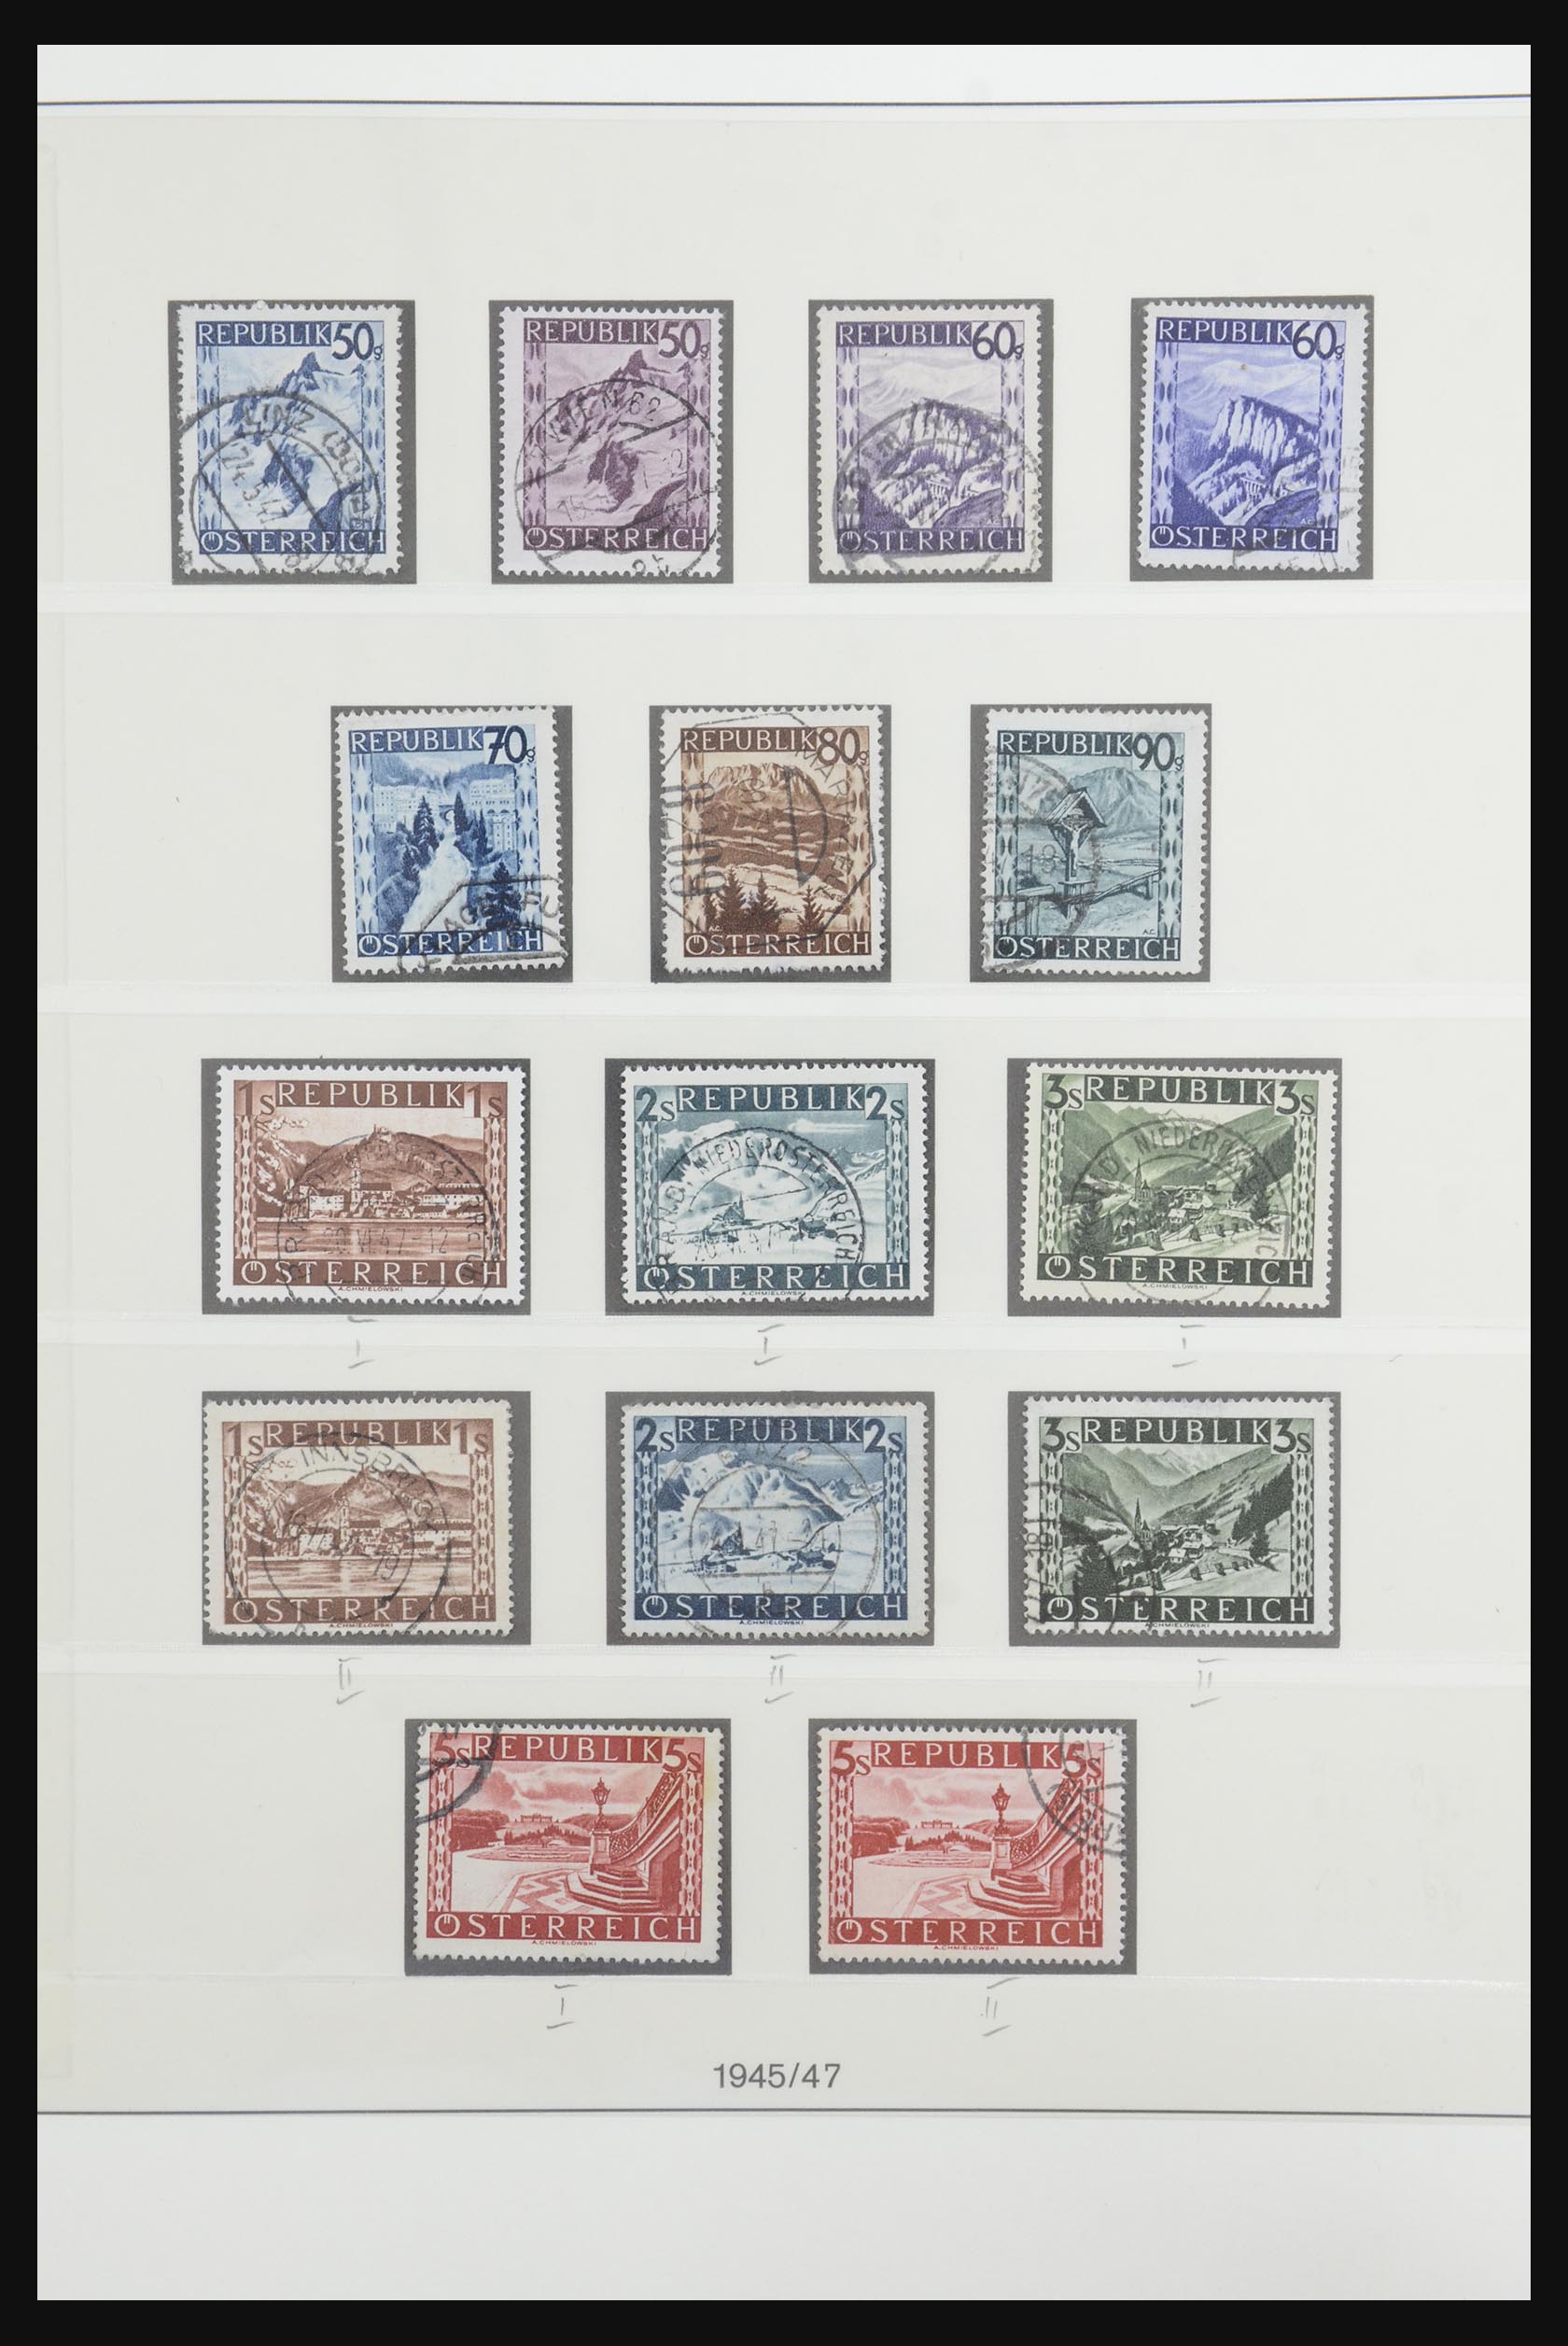 31900 073 - 31900 Austria 1850-1967.